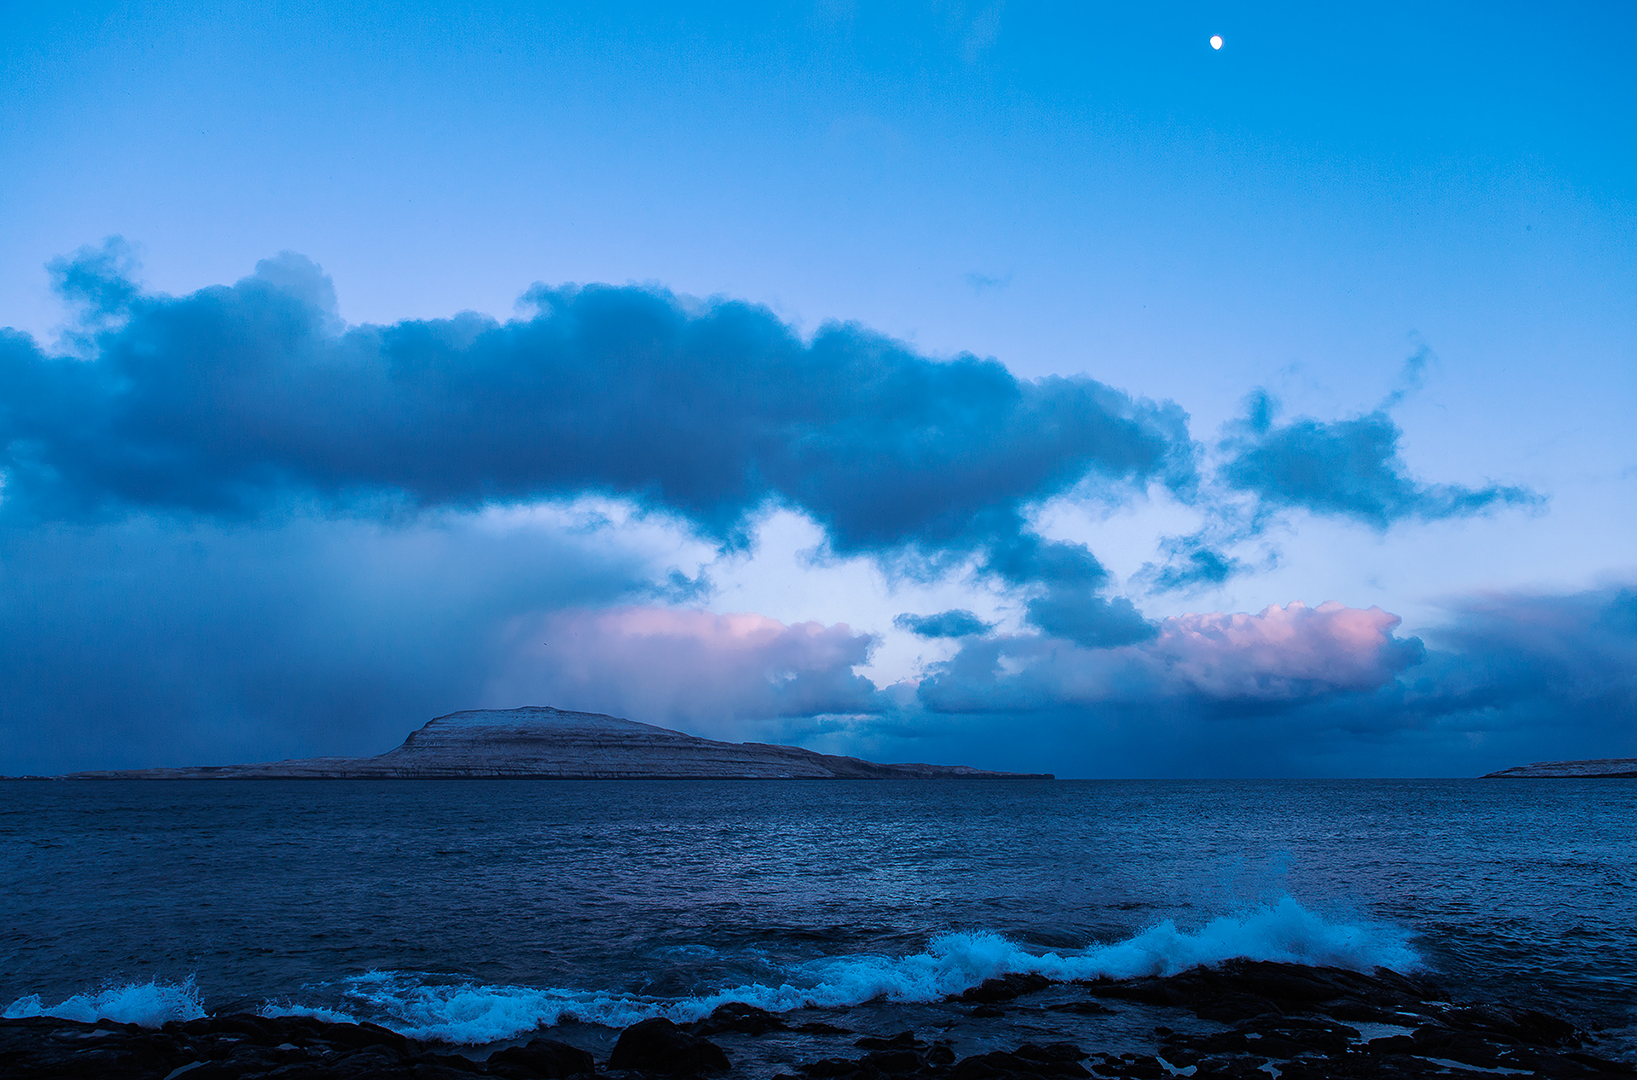 Nolsóy (The Blue Hour), Faroe Islands, 2013